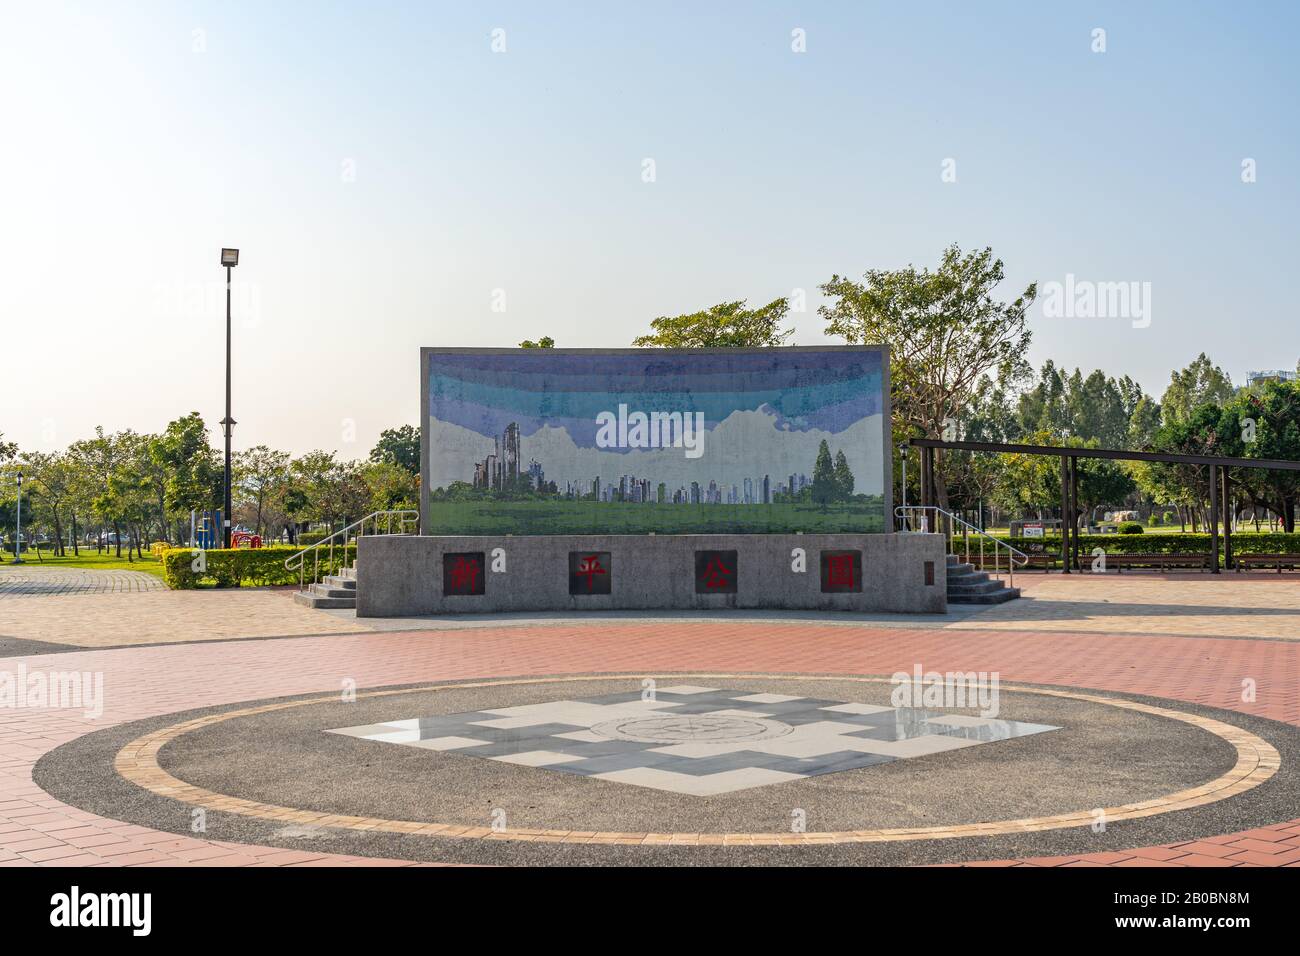 Parc Taichung Xinping au quartier de Beitun Shuinan zone économique et commerciale dans le ciel bleu jour ensoleillé. Ancien Aéroport De Shuinan. Taichung City, Taïwan Banque D'Images